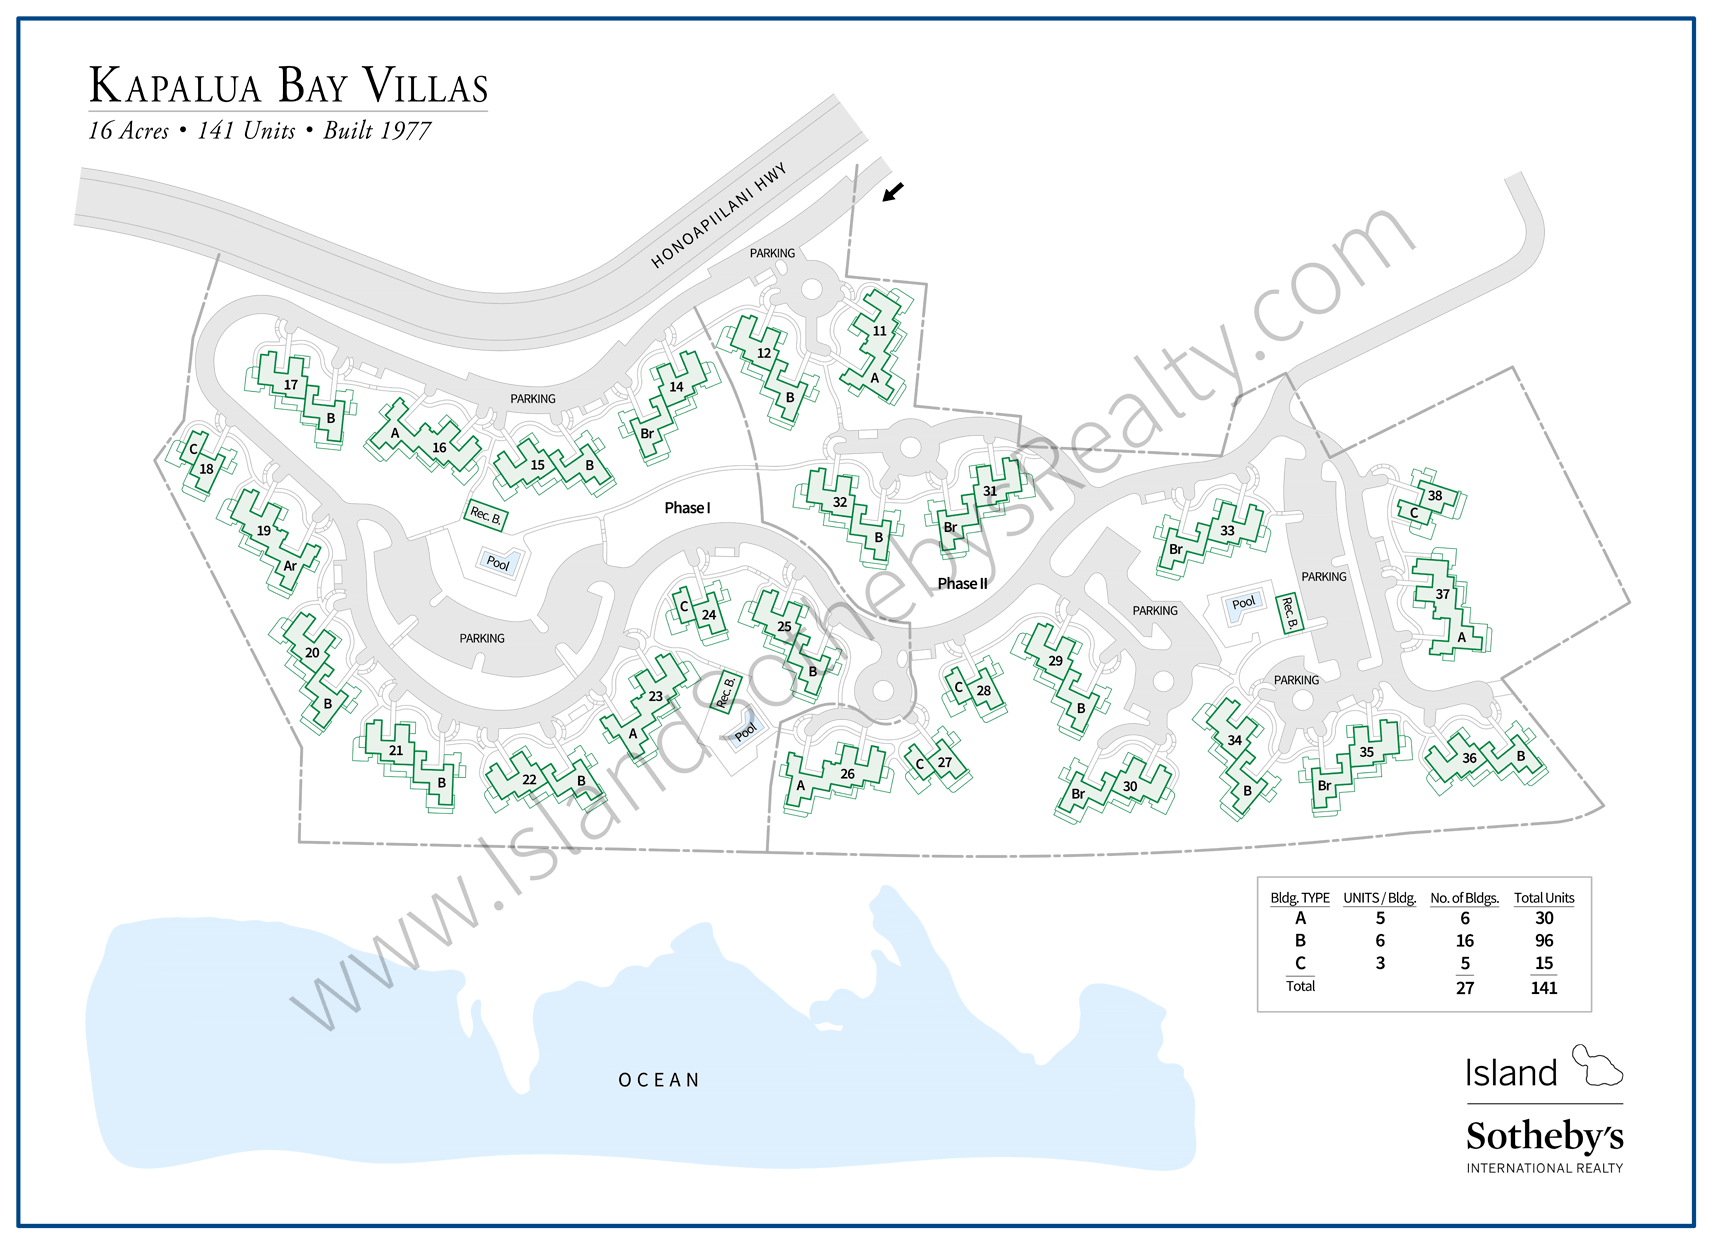 Map of Kapalua Bay Villas Maui